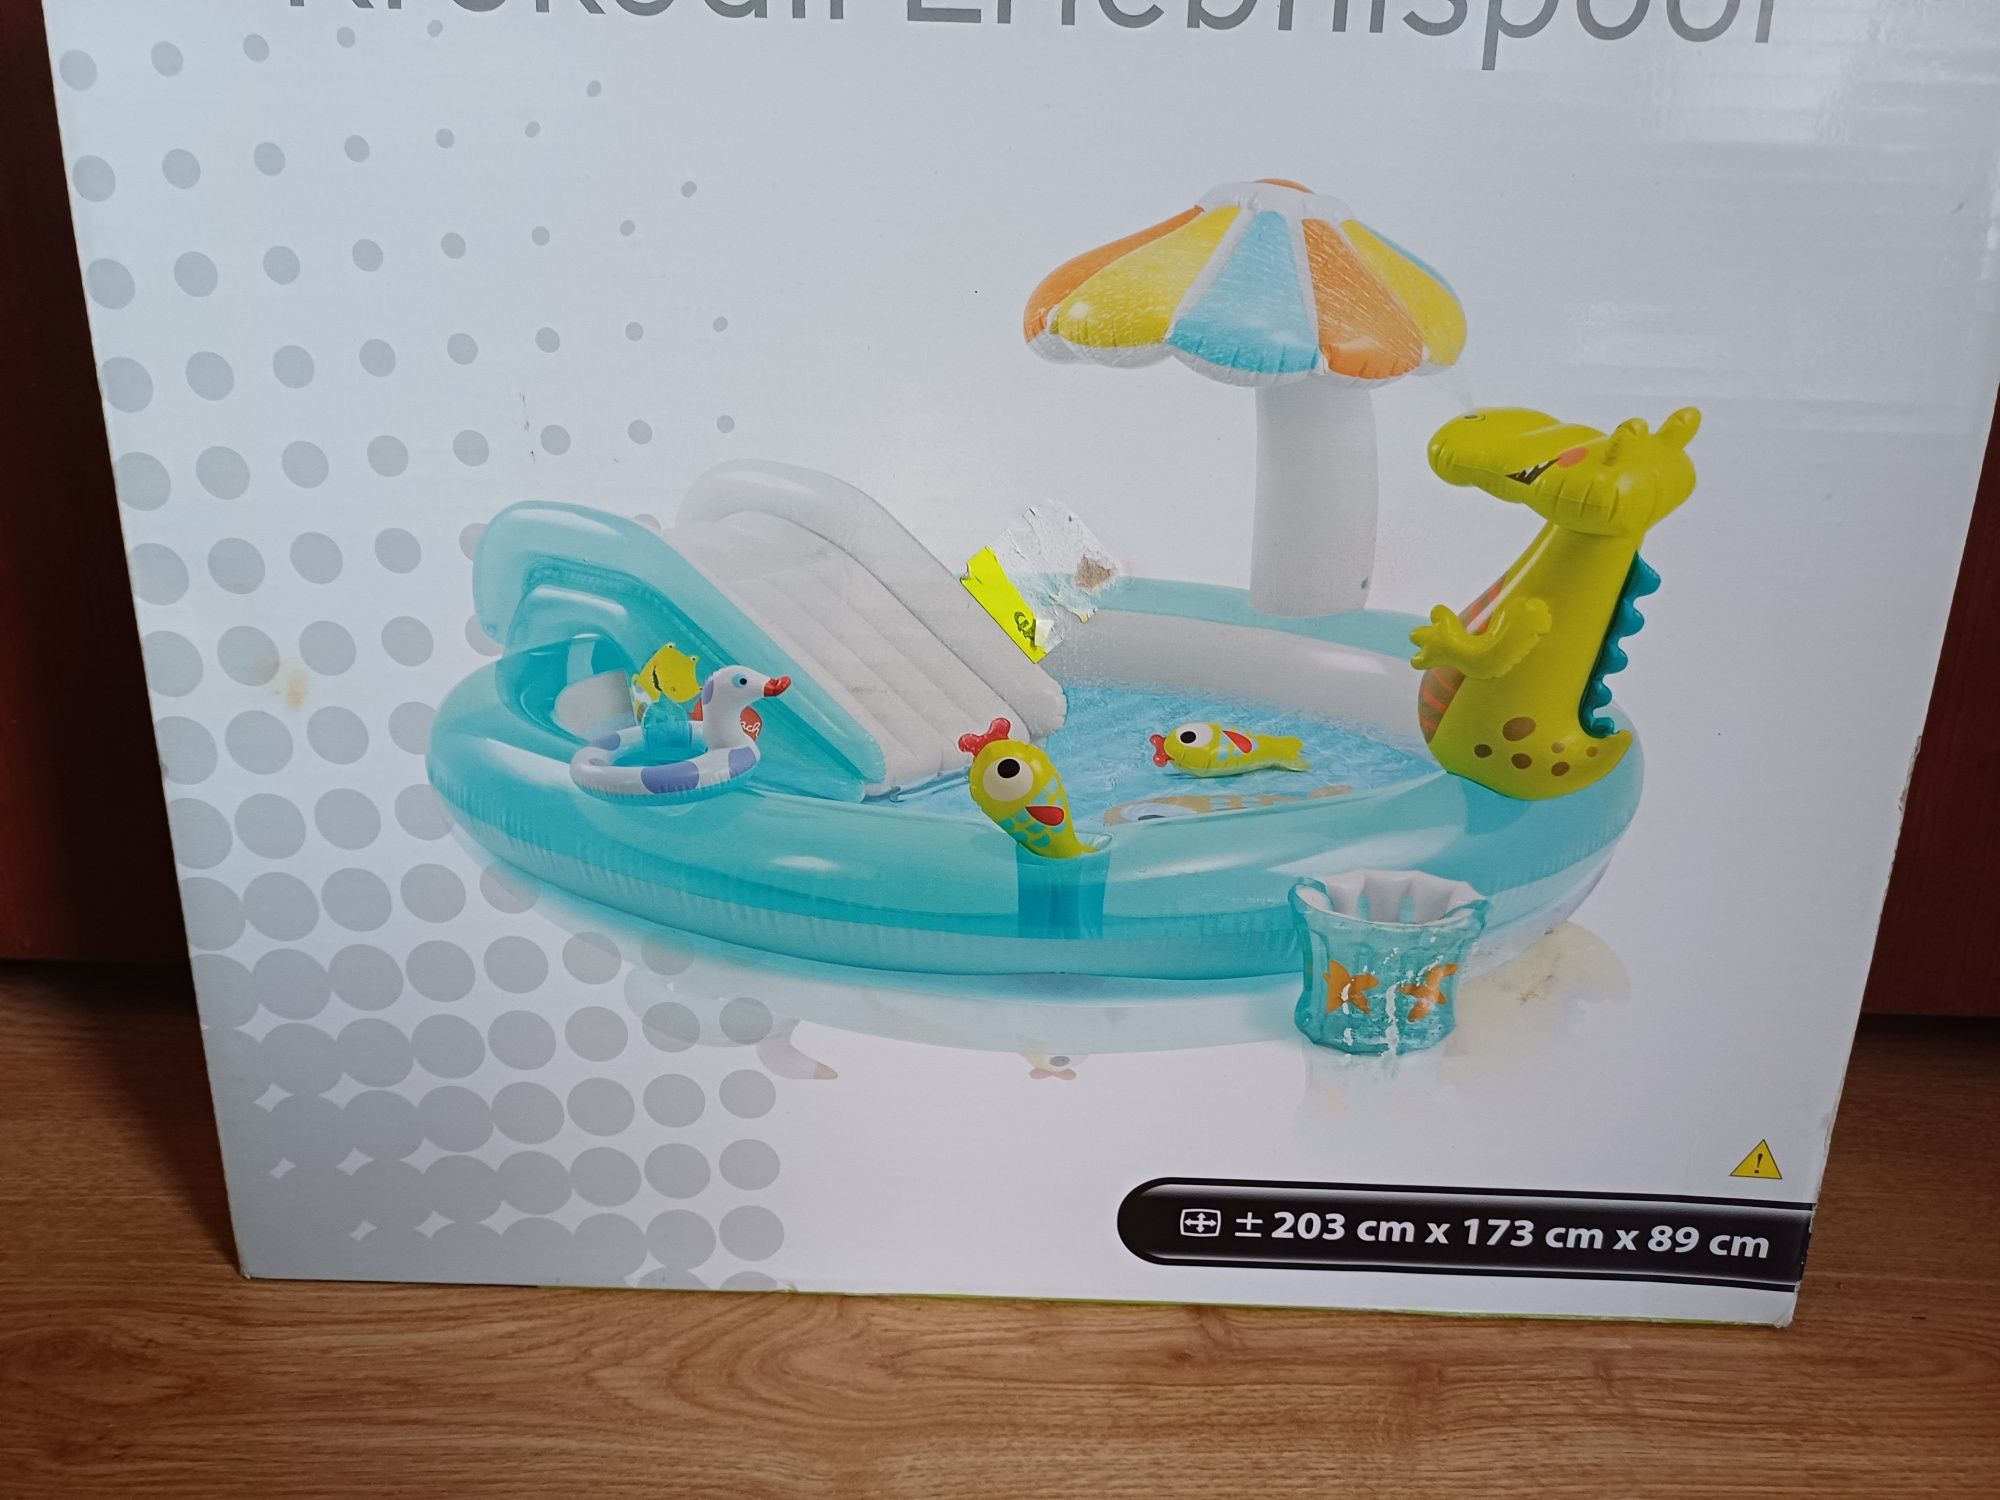 Dmuchany wodny płać zabaw INTEX basen dla dzieci Nowy duzy